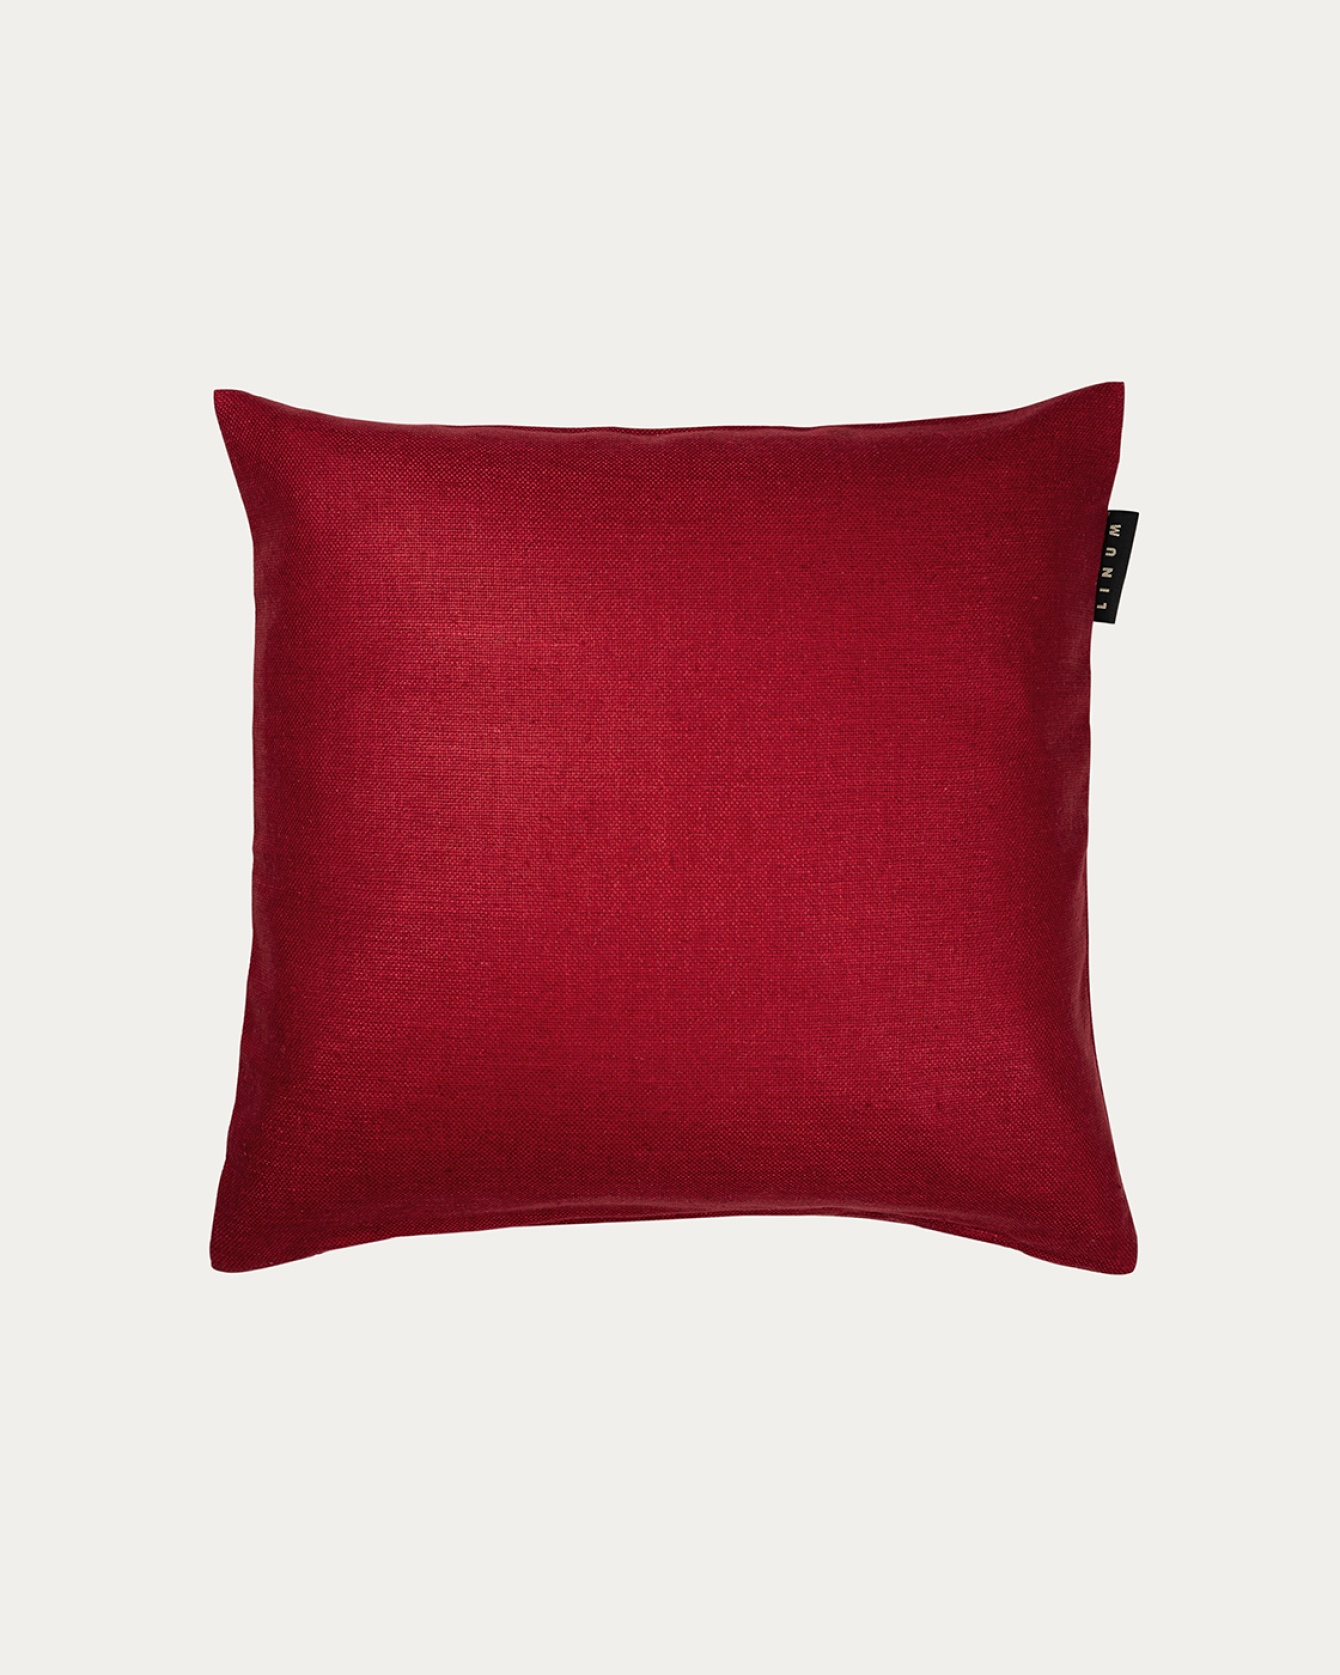 Produktbild rot SETA Kissenhülle aus 100% Rohseide mit schönem Glanz von LINUM DESIGN. Größe 40x40 cm.